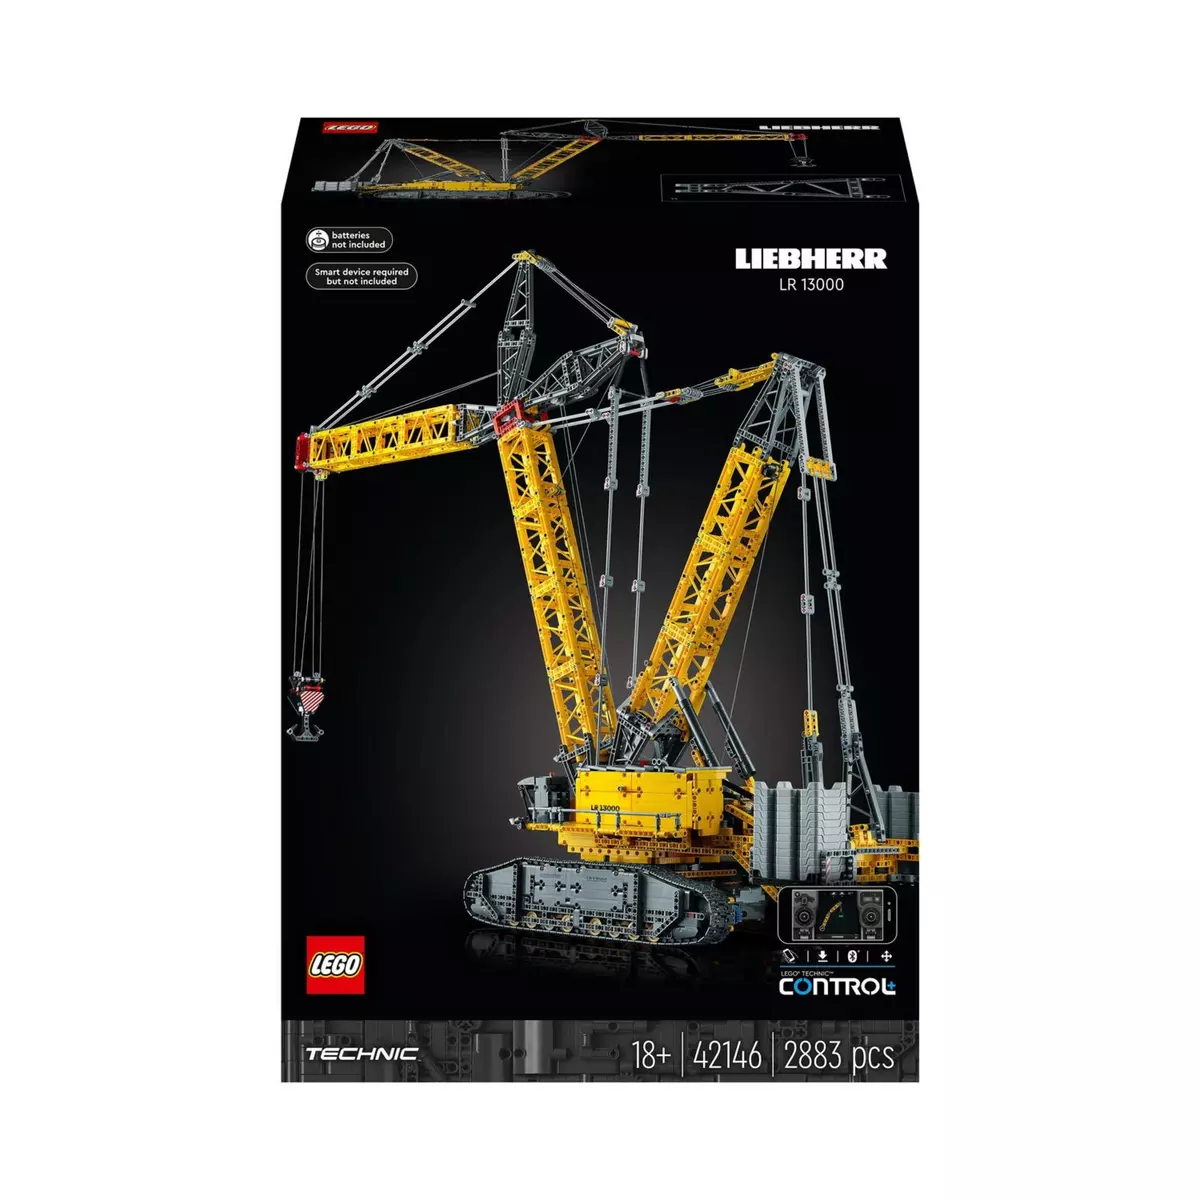 LEGO Technic 42146 La Grue sur Chenilles Liebherr LR 13000, Maquette E